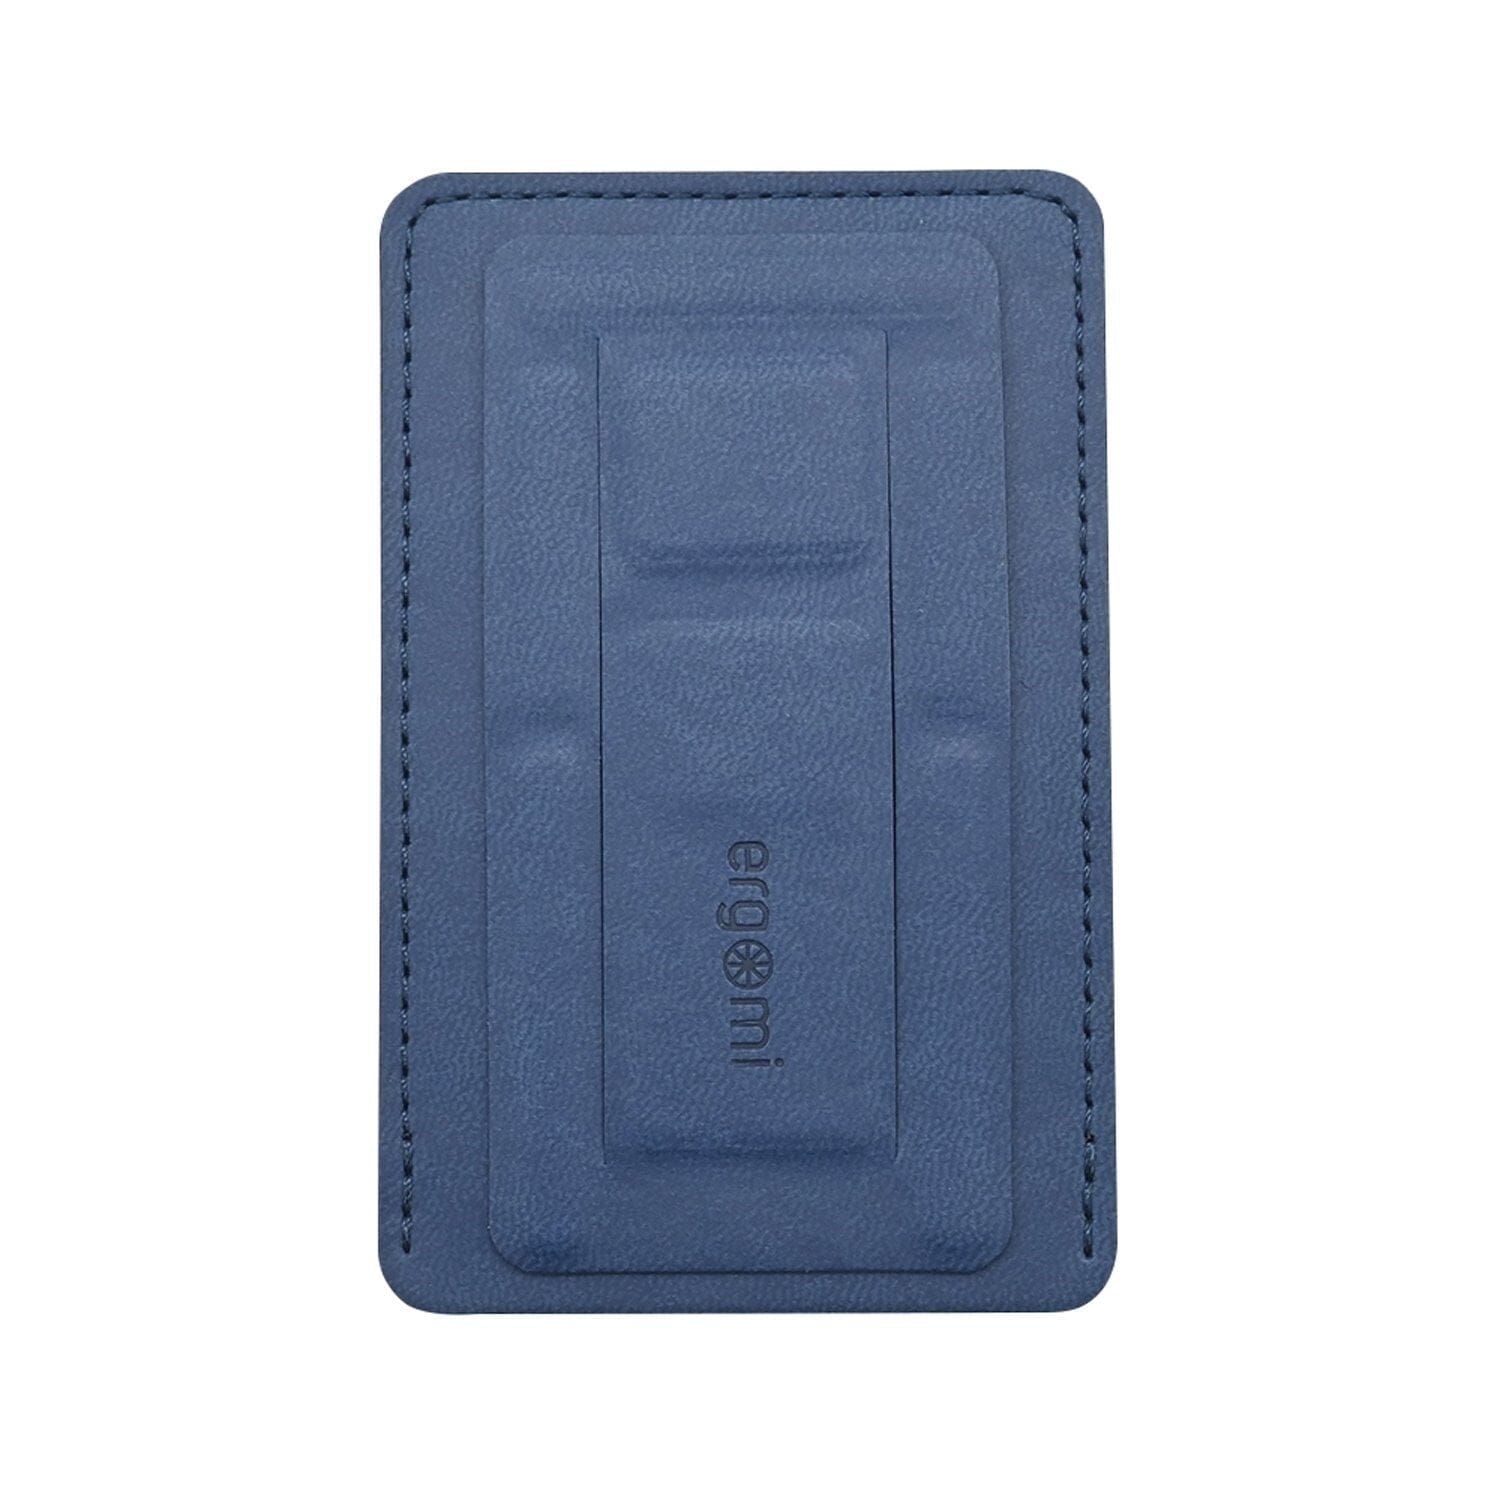 Ergomi Hercules Wallet Adhesive Cardholder Phone Stand Phone Stand Ergomi Midnight Blue 